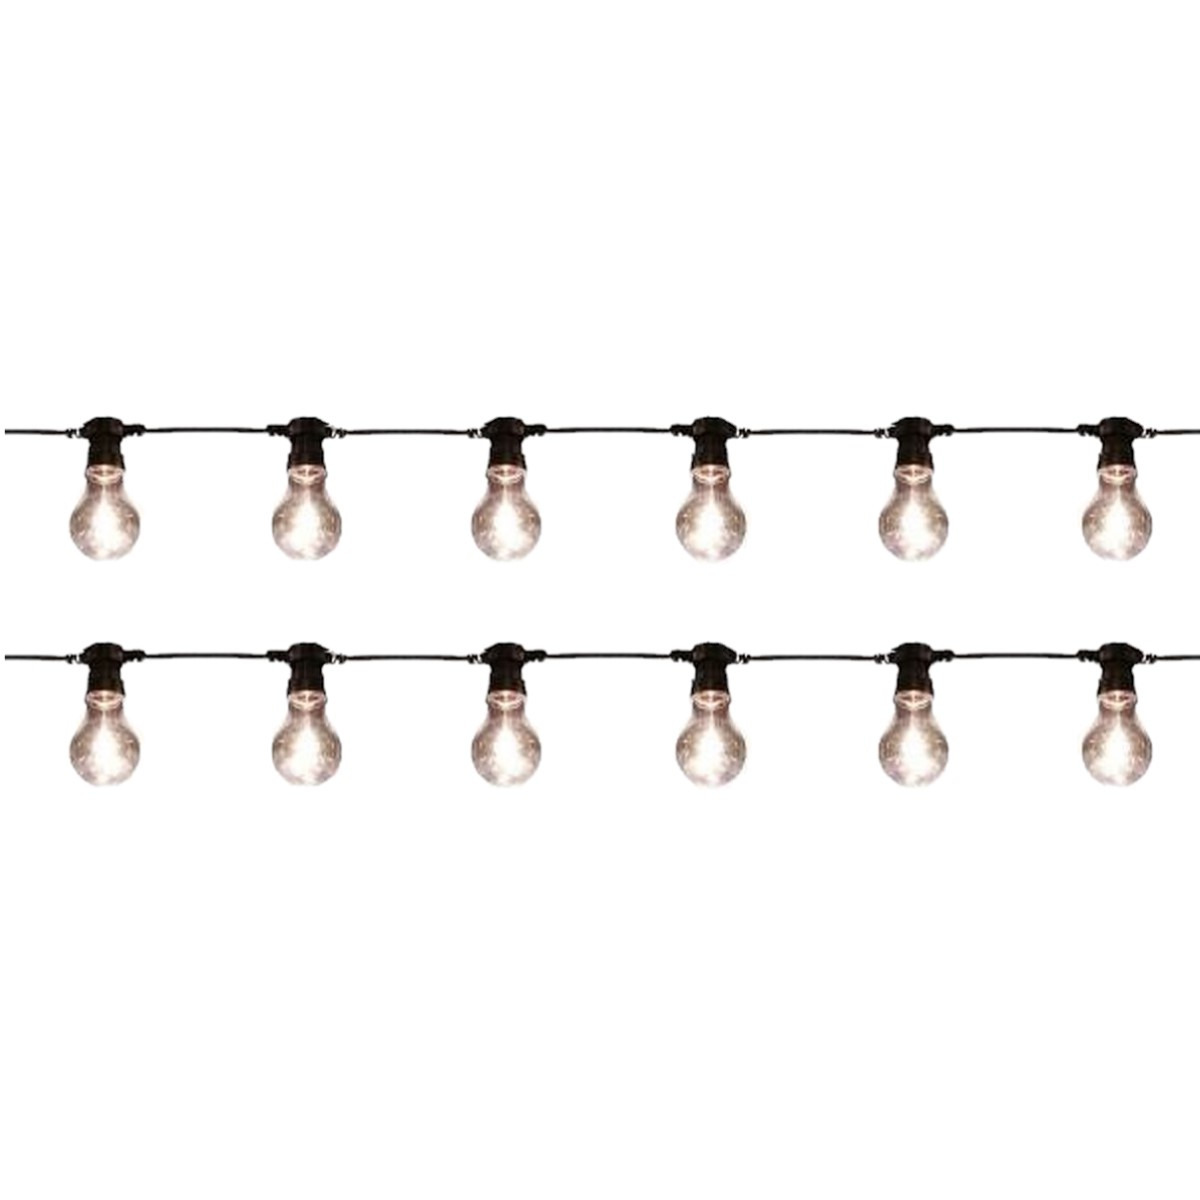 2x stuks feest tuinverlichting snoer 10 meter warm witte LED verlichting